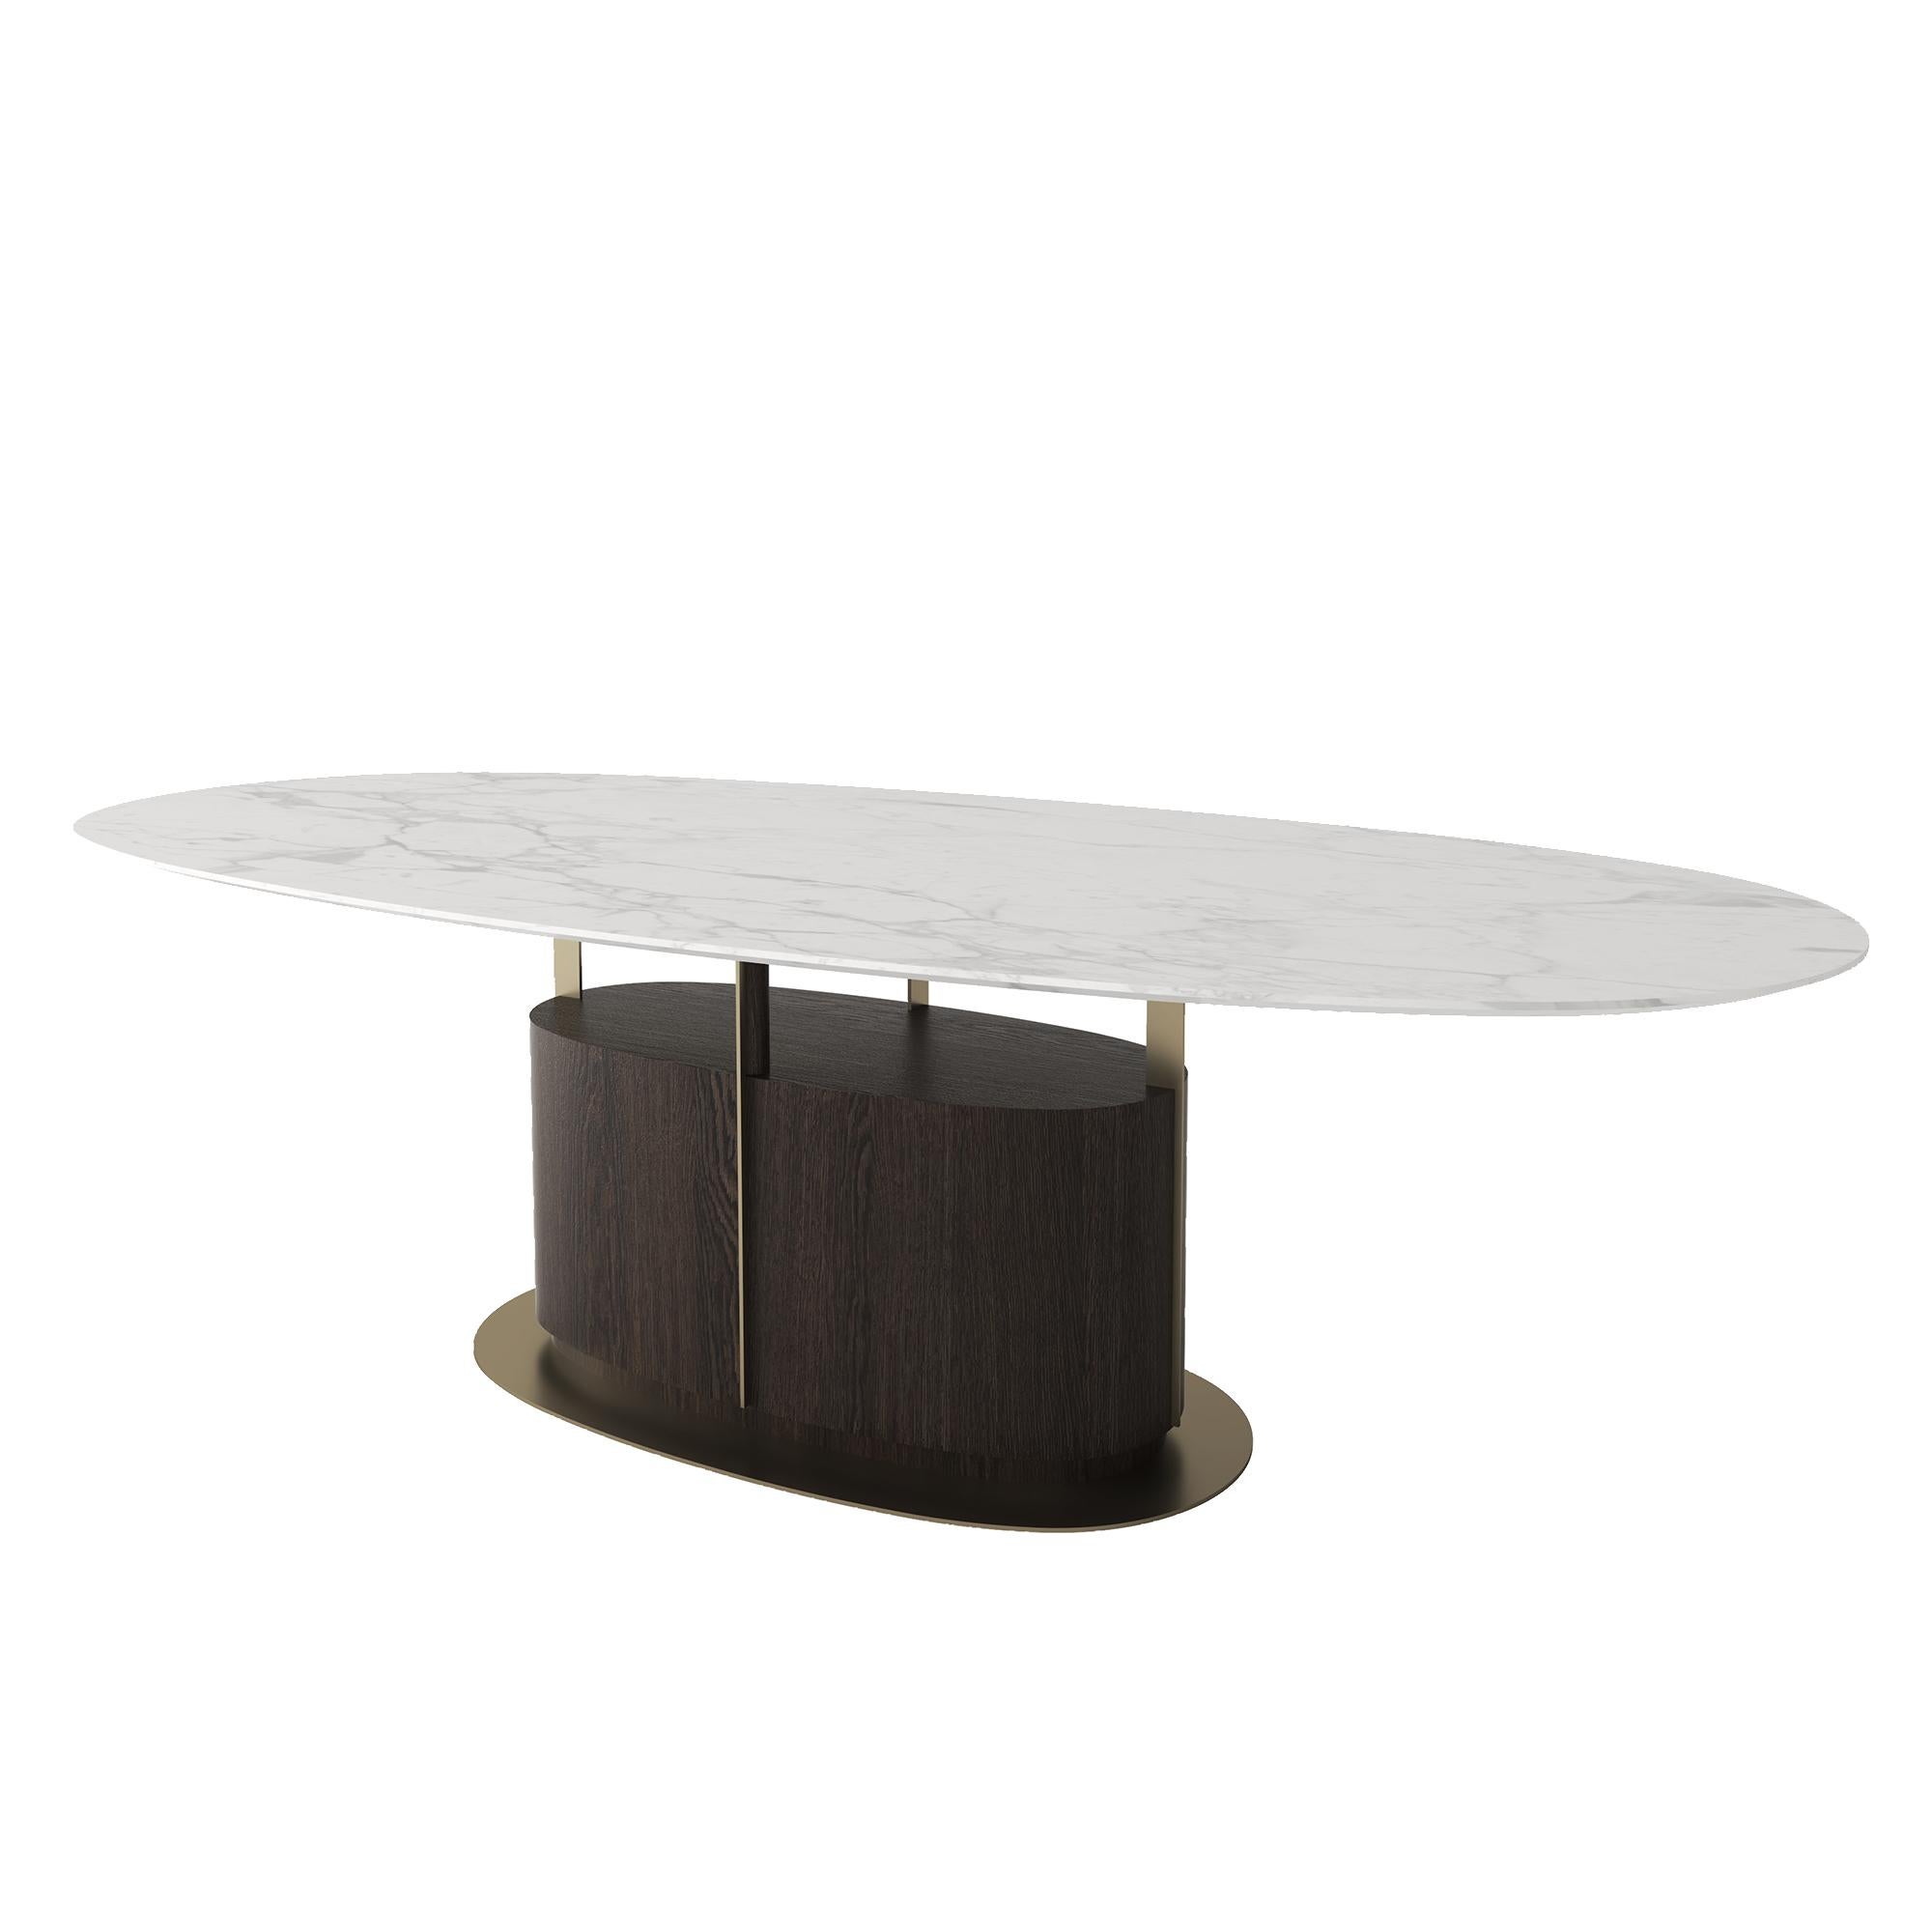 La table de salle à manger GIO combine le charme des matériaux classiques avec des lignes modernes.
Le plateau de la table est en marbre et sa structure porteuse est en laiton et en bois.
Disponible en différentes tailles et matériaux.
Conçu par